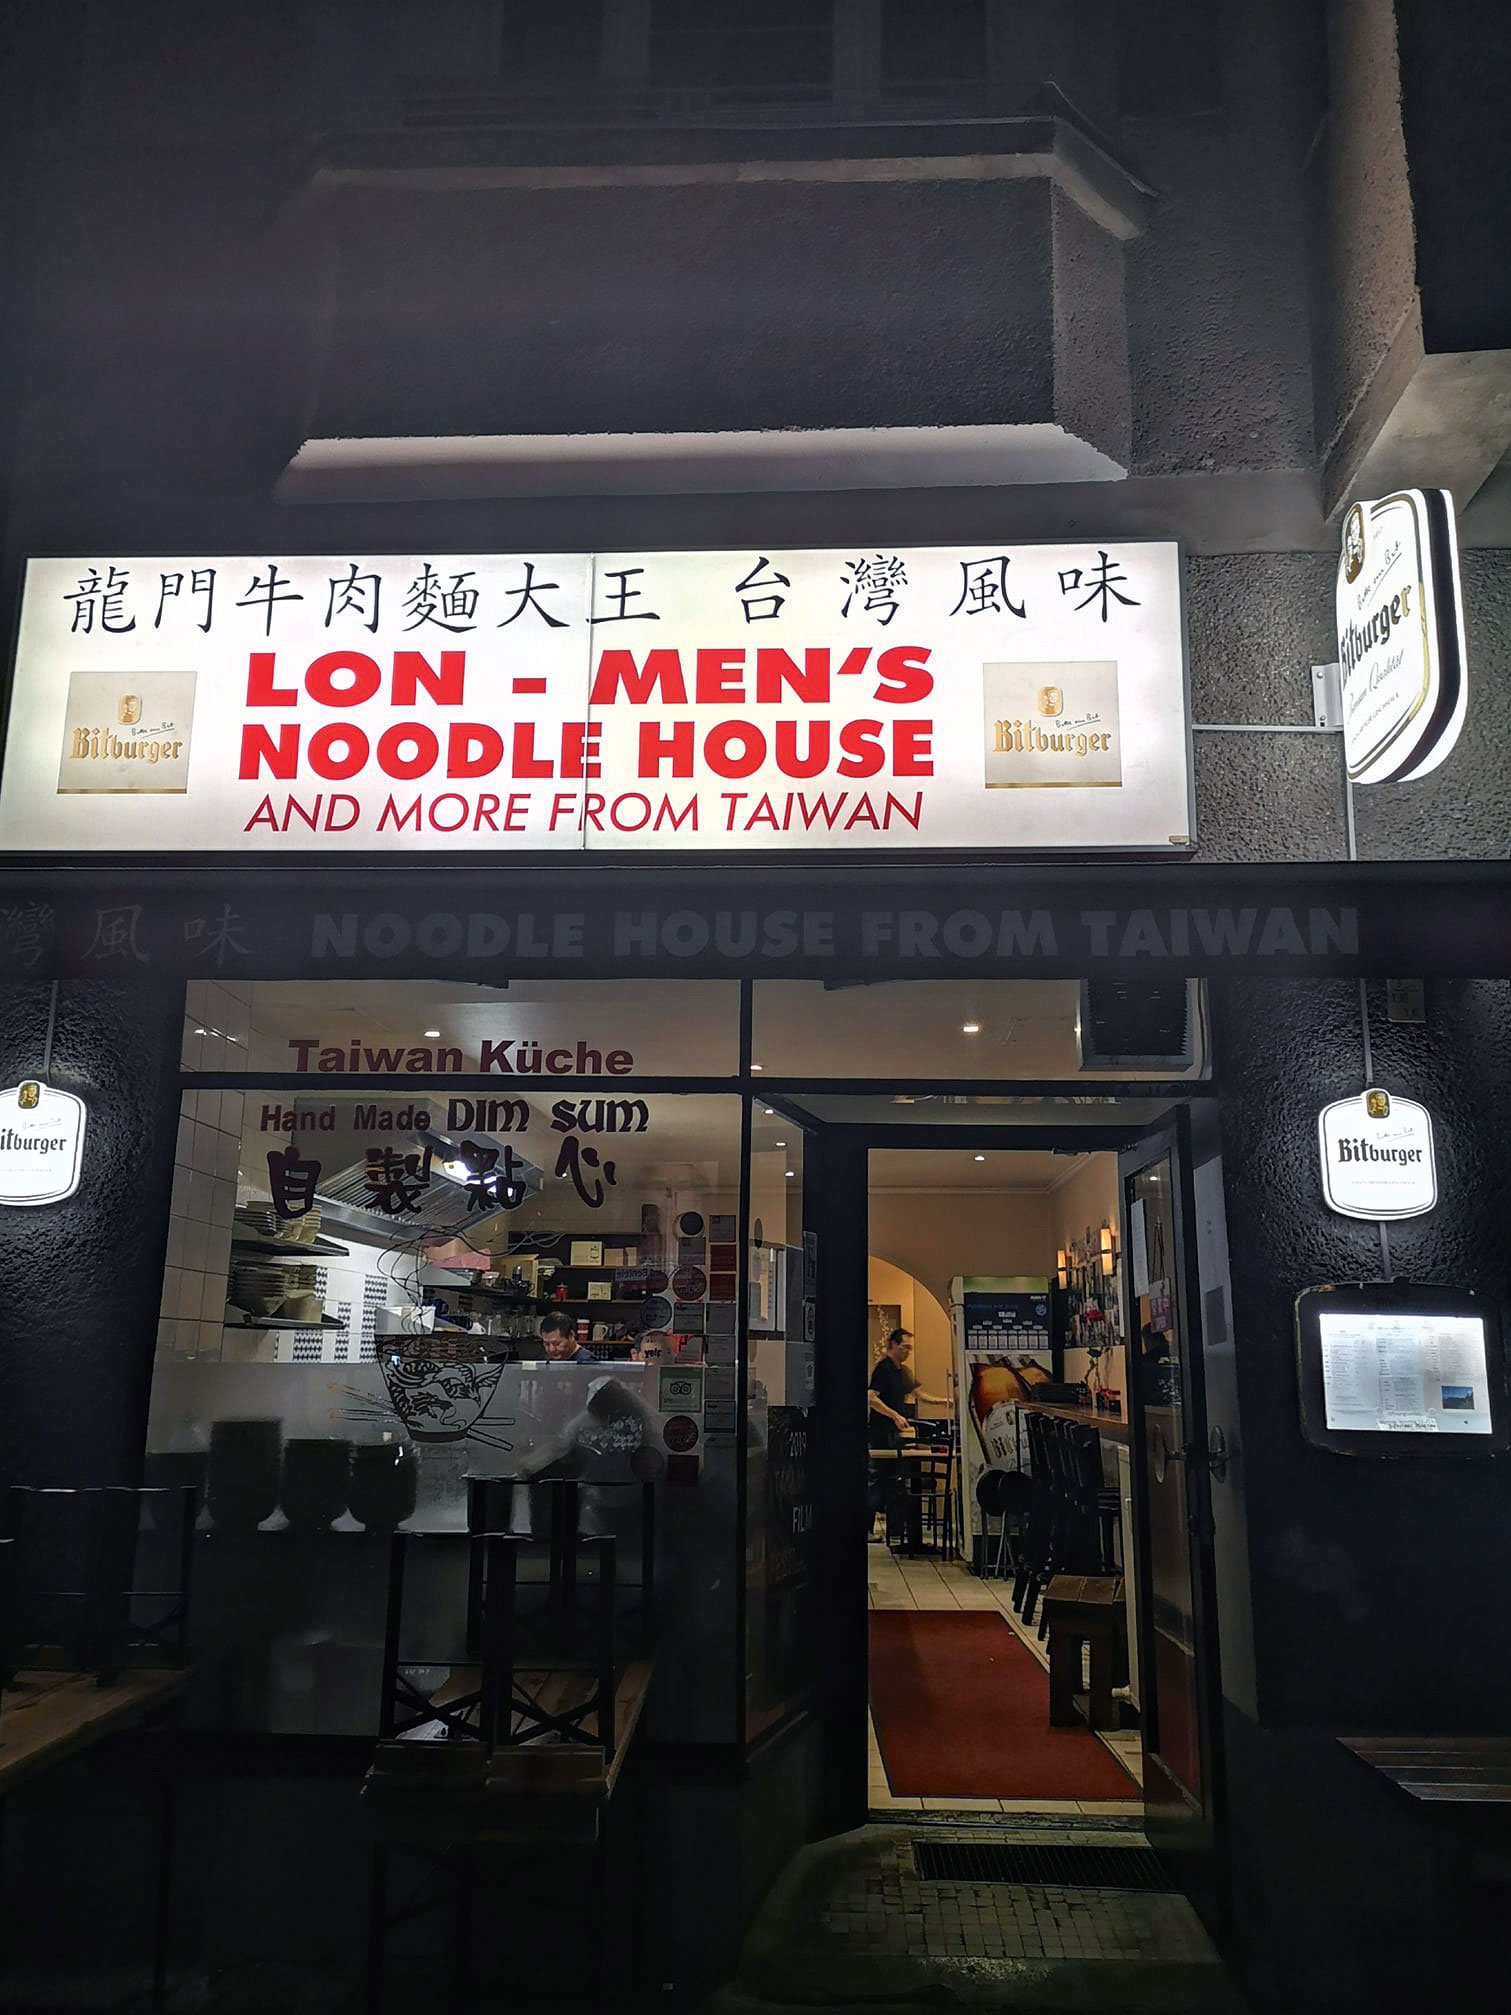 Lon Men’s Noodle House, Berlin, lon-mens-noodle-house.business.site:  »Der taiwanesische Familien-betrieb ist mein absolutes Stammrestaurant in Berlin. Die Spezialität des Hauses sind Wan Tan in Chili-Öl.«